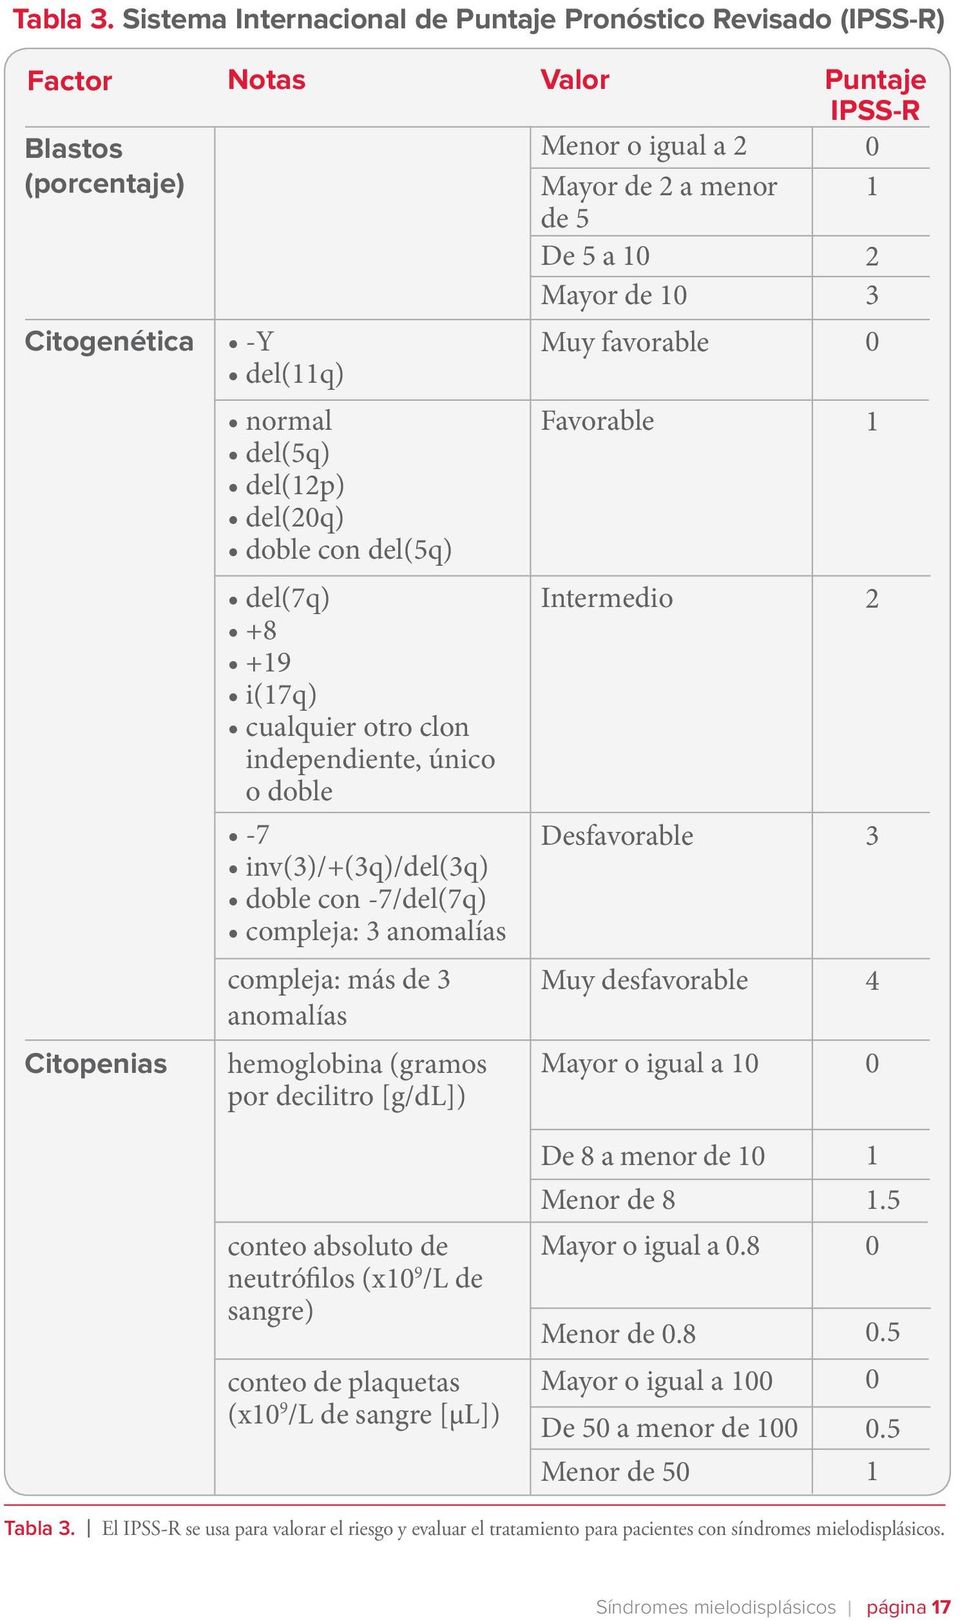 Citogenética -Y del(11q) Muy favorable 0 normal del(5q) del(12p) del(20q) doble con del(5q) Favorable 1 del(7q) +8 +19 i(17q) cualquier otro clon independiente, único o doble Intermedio 2-7